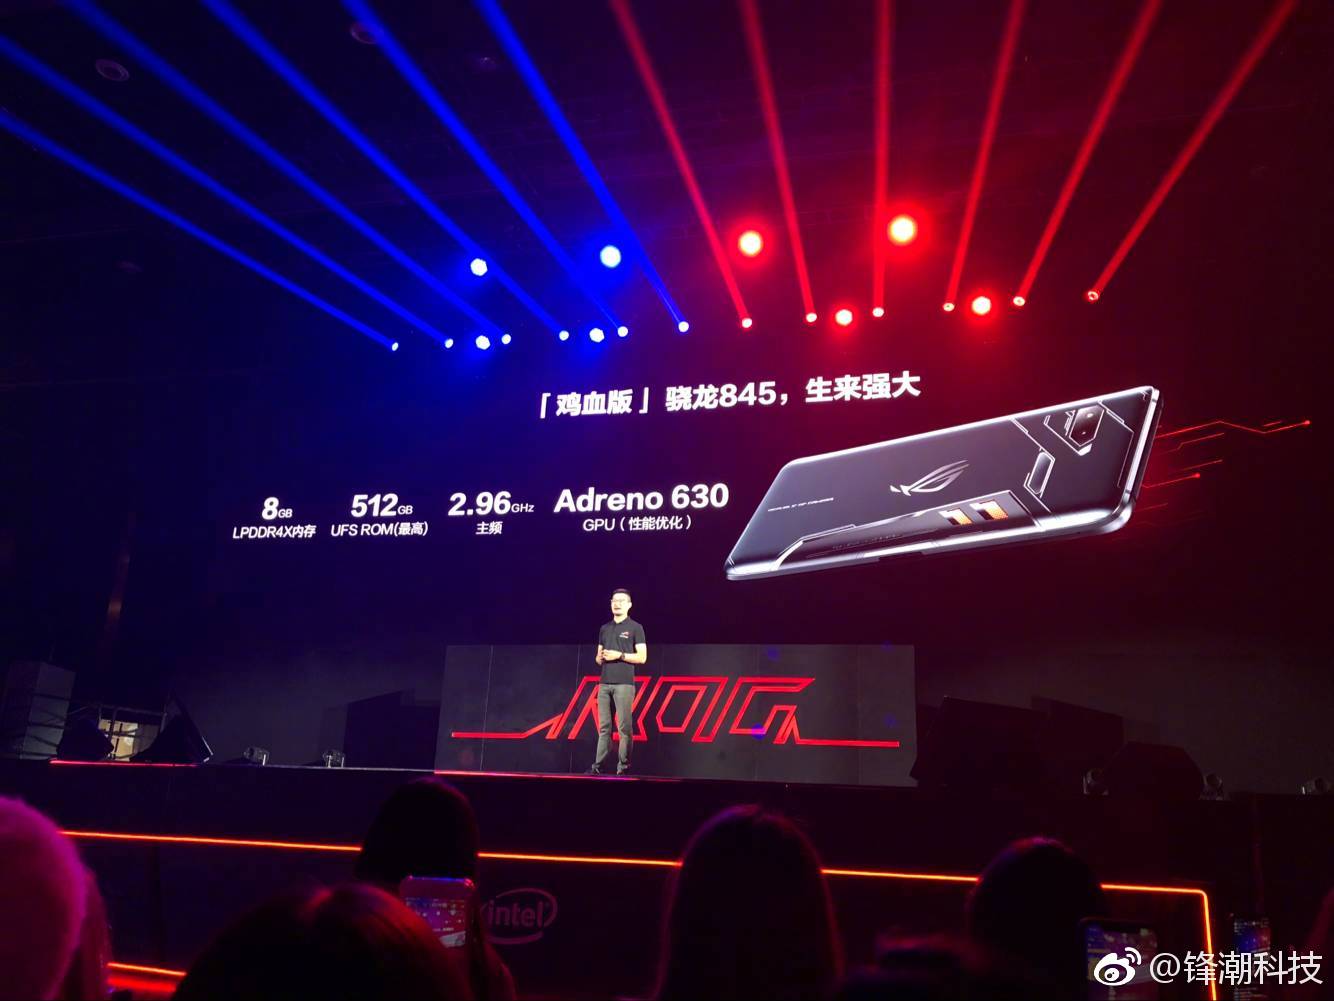 华硕公布ROG游戏手机国行价格 起价5999元、9月26日上市